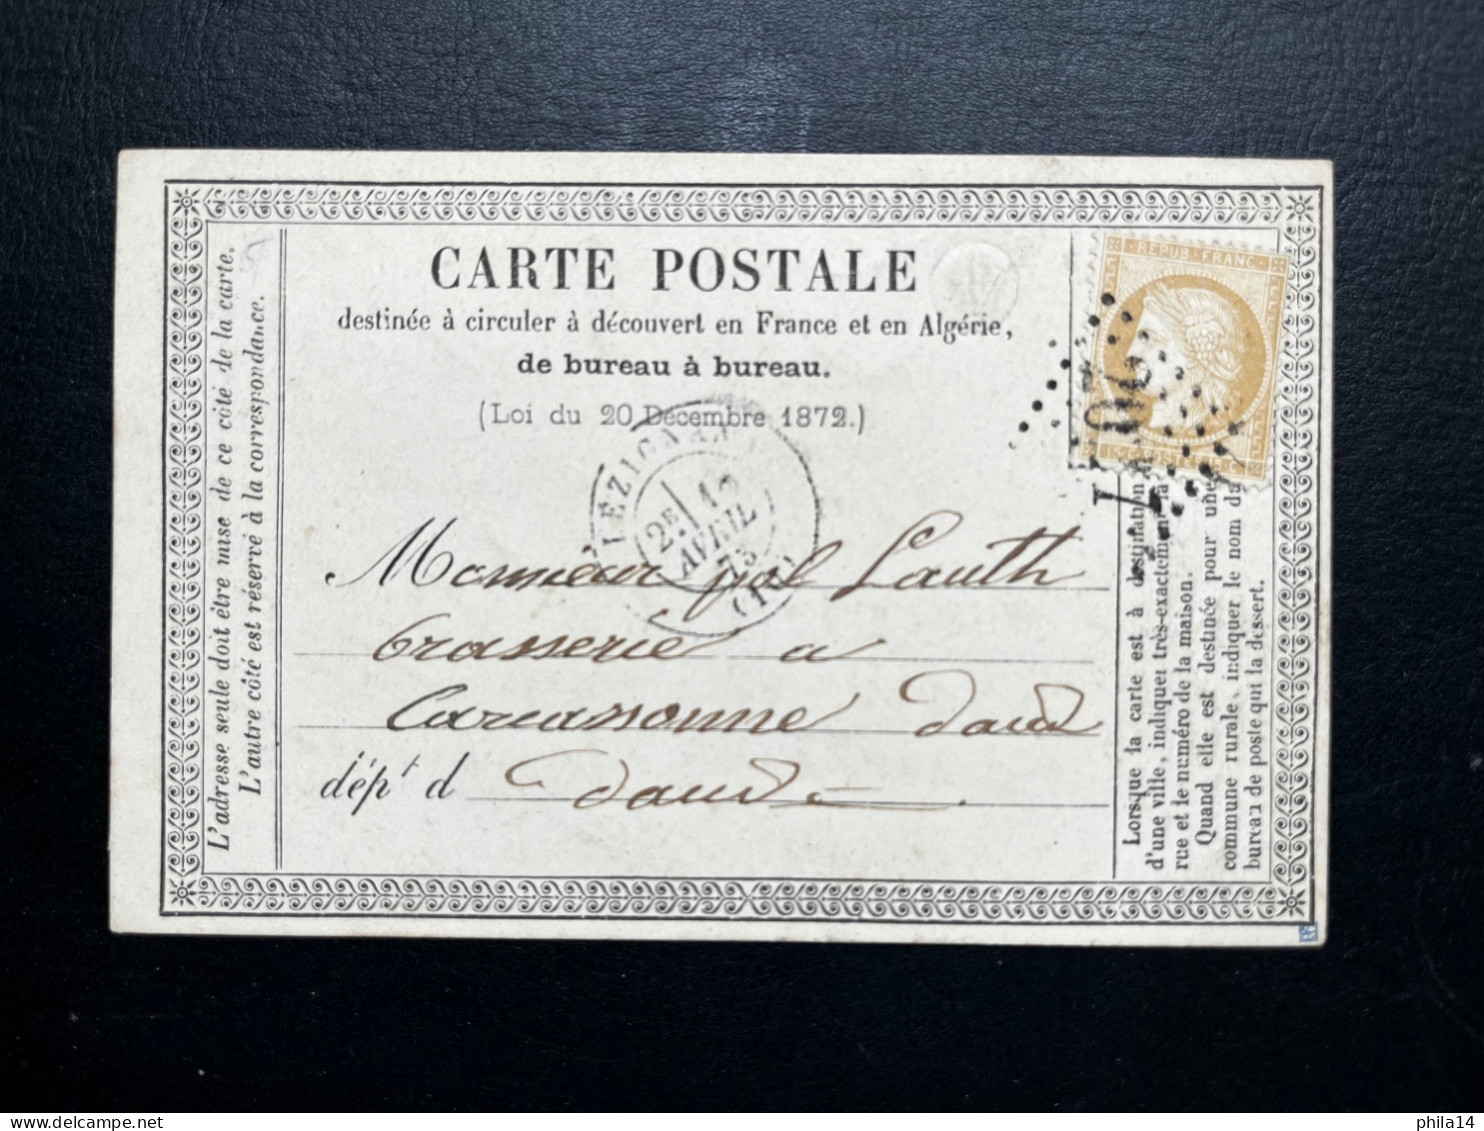 N° 59 15c BRUN CERES SUR CARTE POSTALE / LEZIGNAN POUR CARCASSONNE / 18 AVRIL 1875 / LAC BR N RAISSAC - 1849-1876: Classic Period